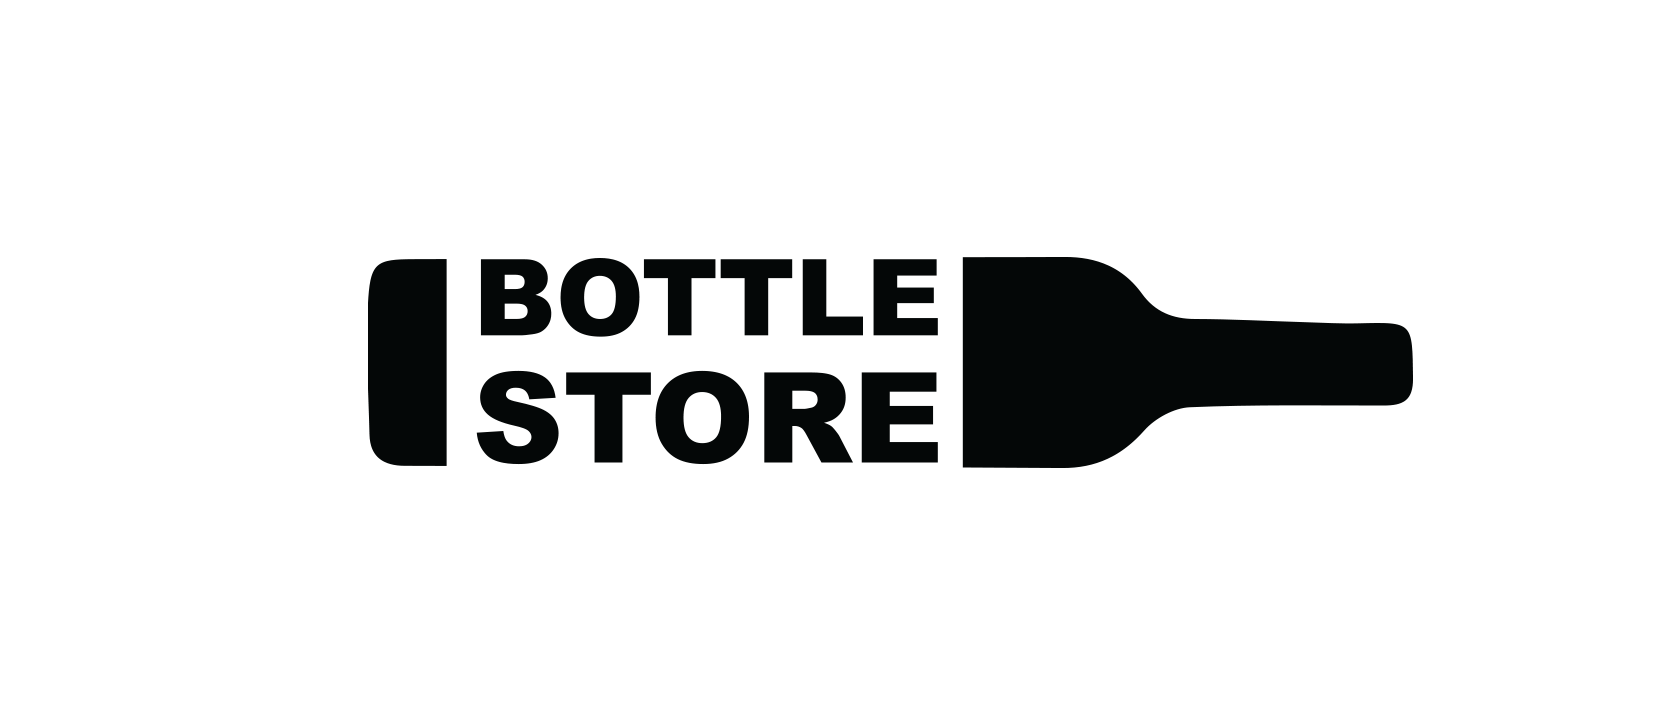 Bottle Store